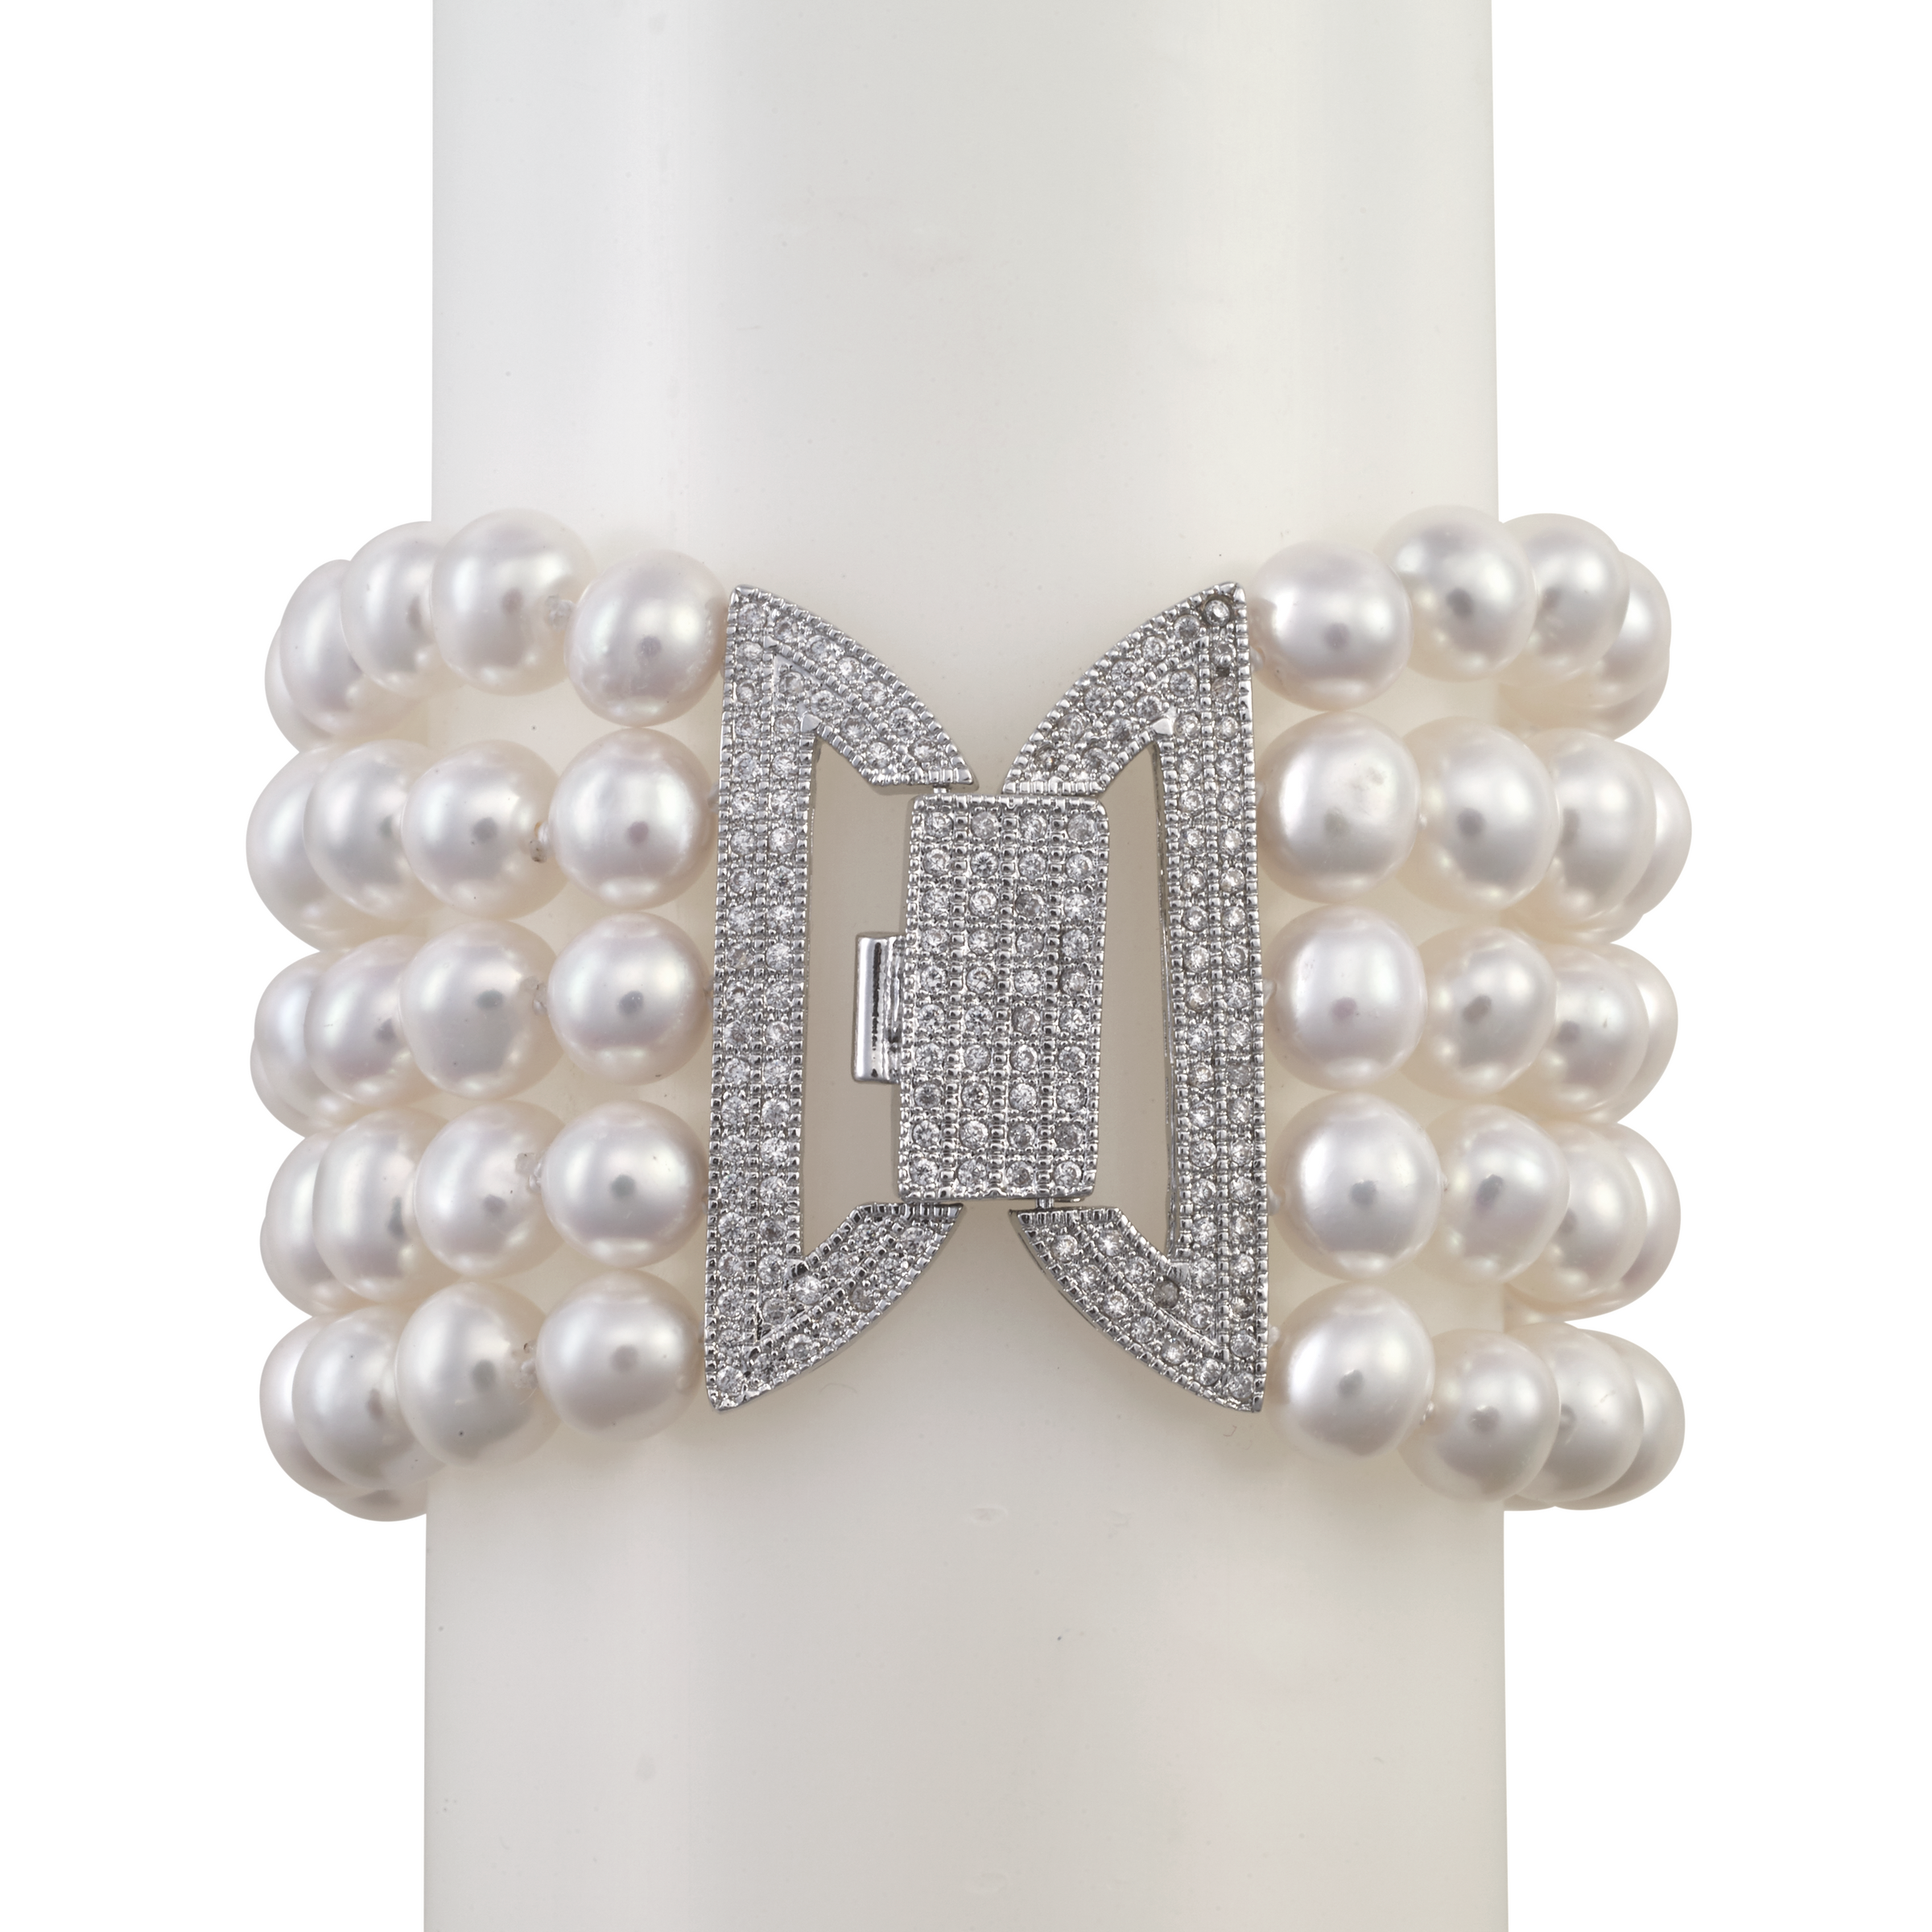 Schoeffel 750 18k Gold Pearl 3 Strand Bracelet w Diamond Clasp. | eBay